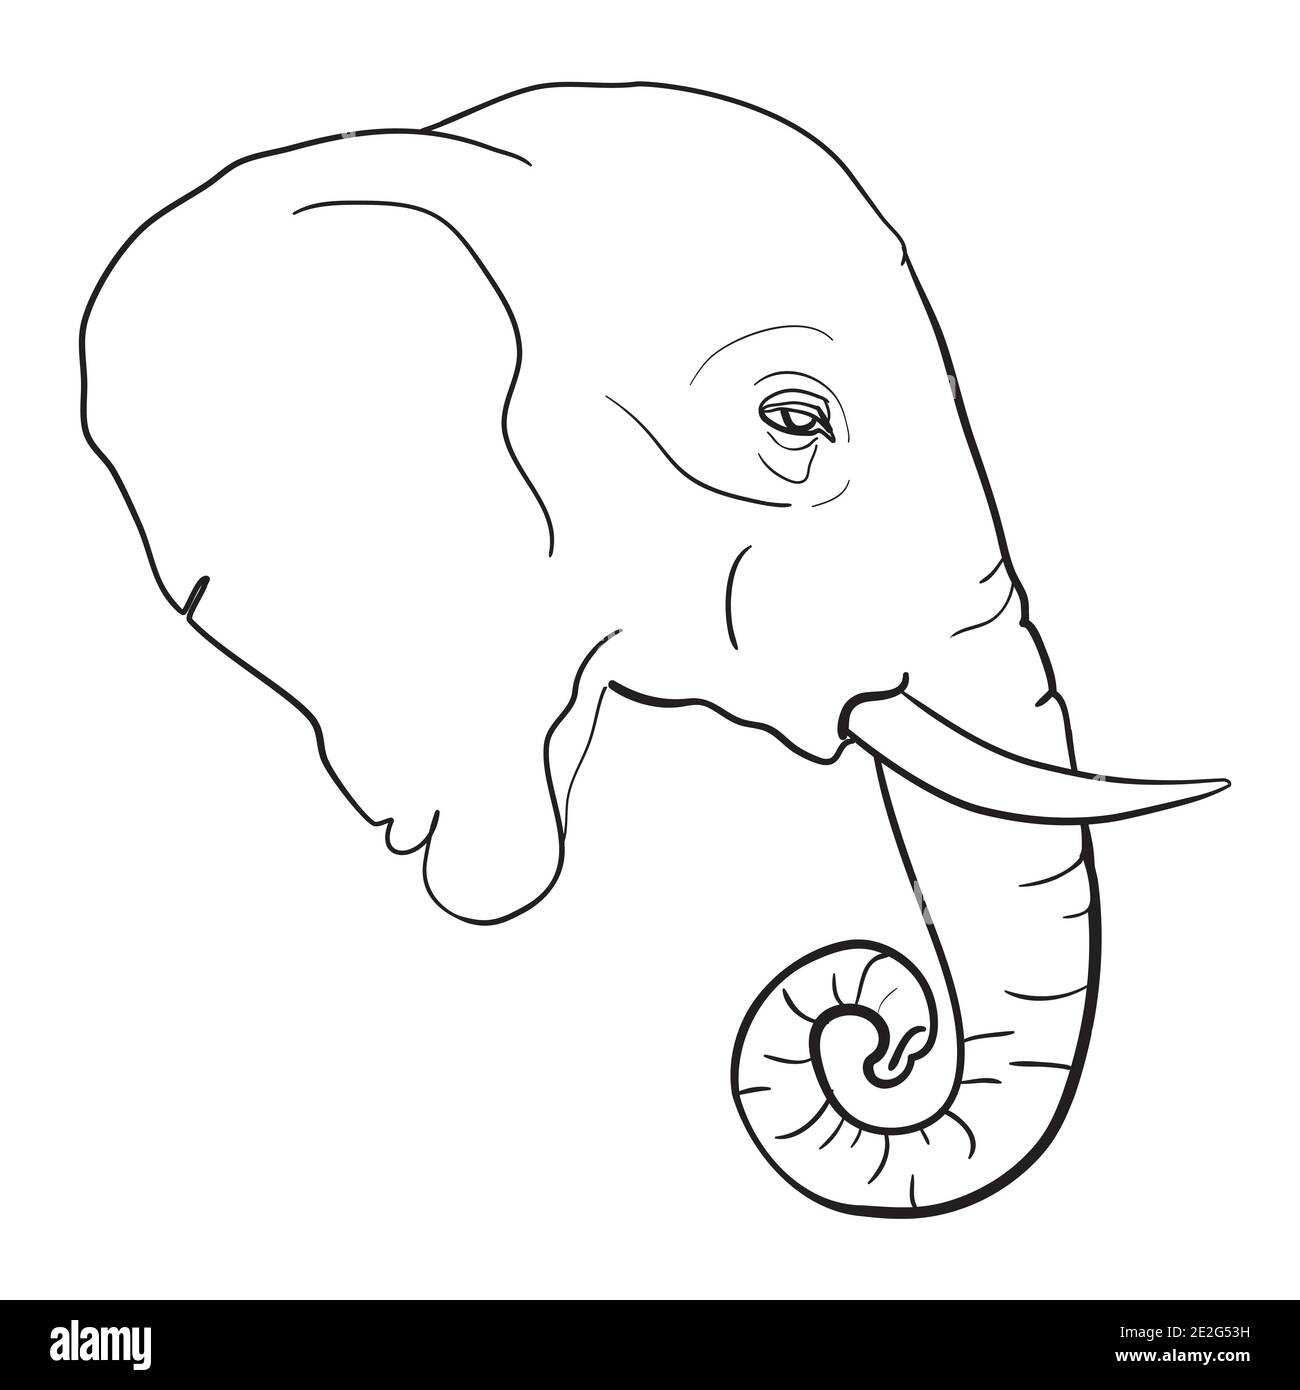 dessin à la main de l'illustration de l'éléphant d'asie fait en noir et isolé sur fond blanc Illustration de Vecteur